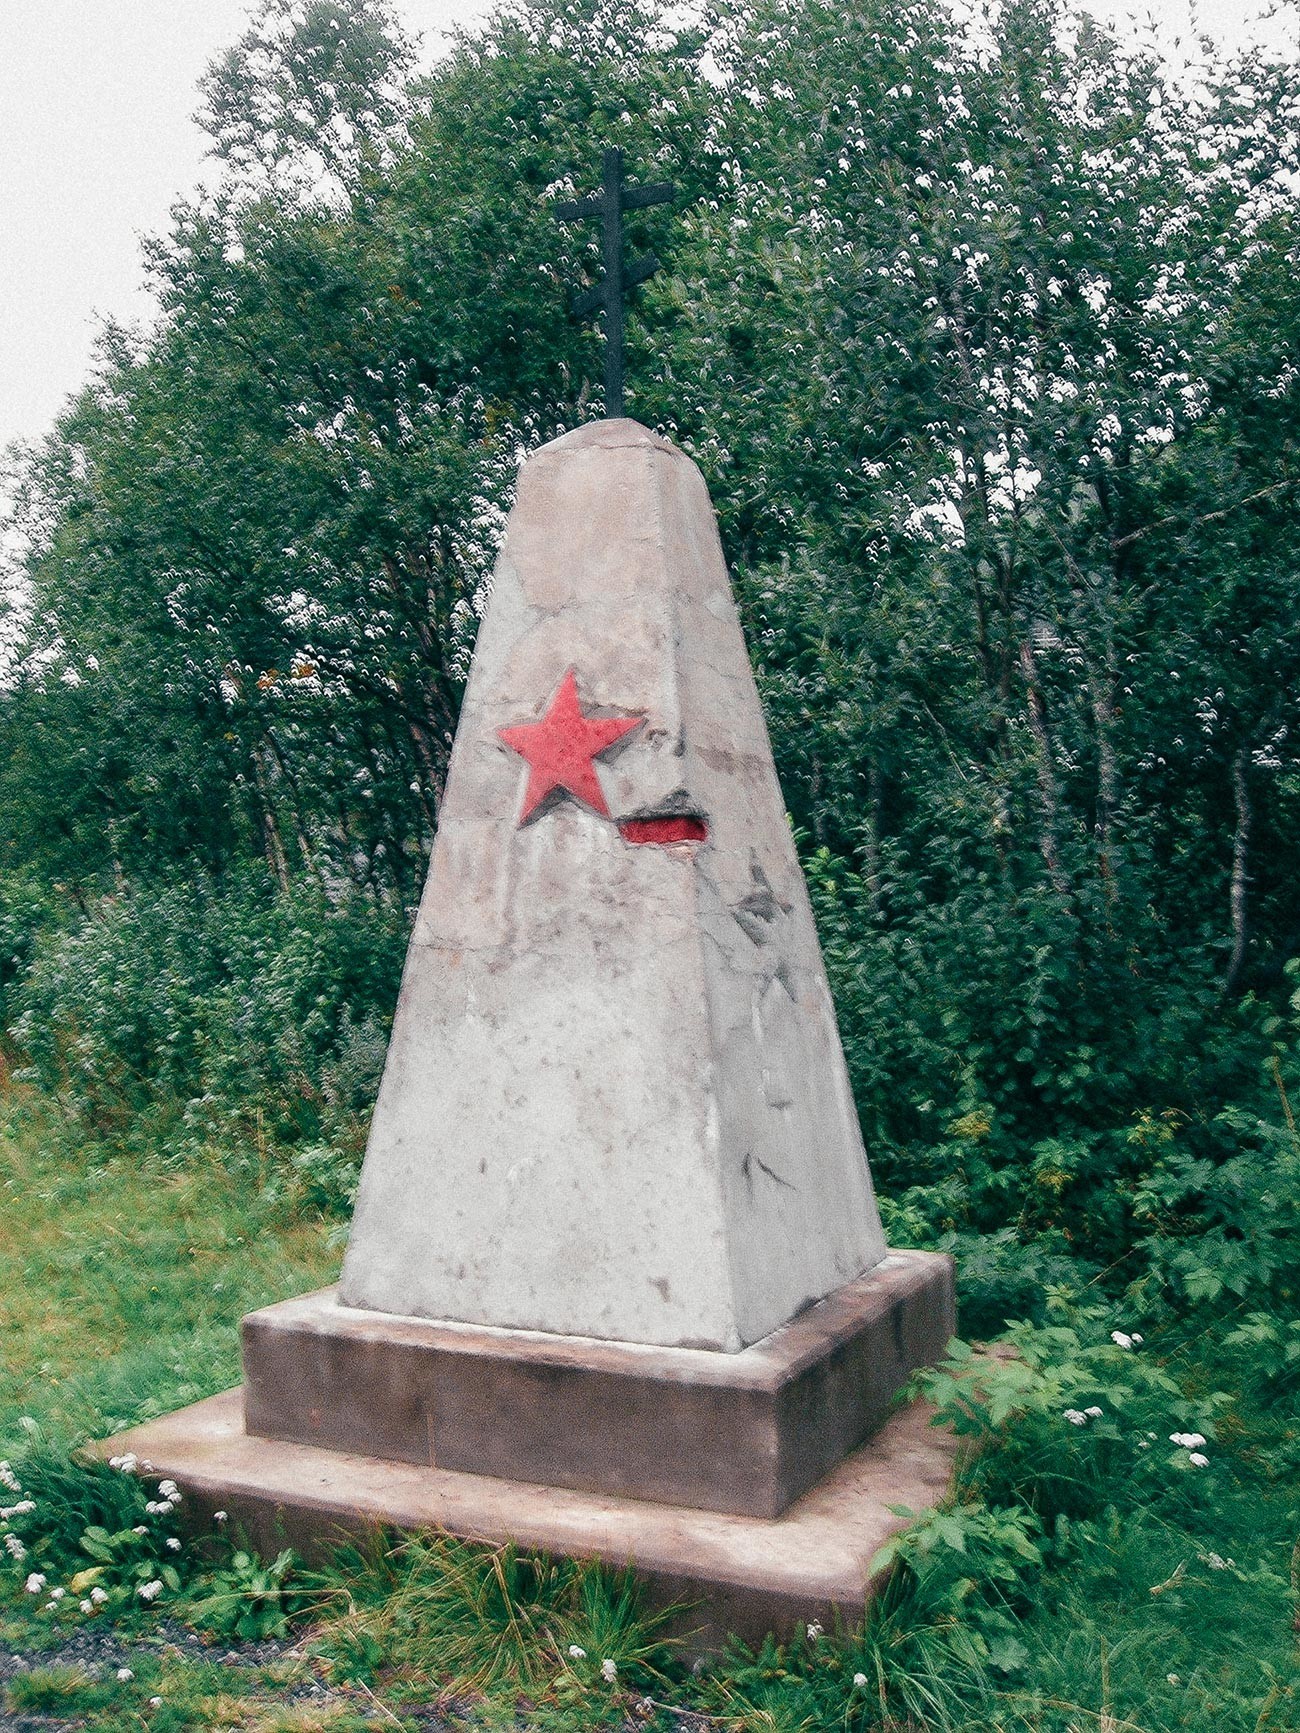 Pedra memorial dos cerca de 5.000 prisioneiros soviéticos, que construíram trecho da Nordlandsbanen (ferrovia Nordland) durante a Segunda Guerra Mundial
